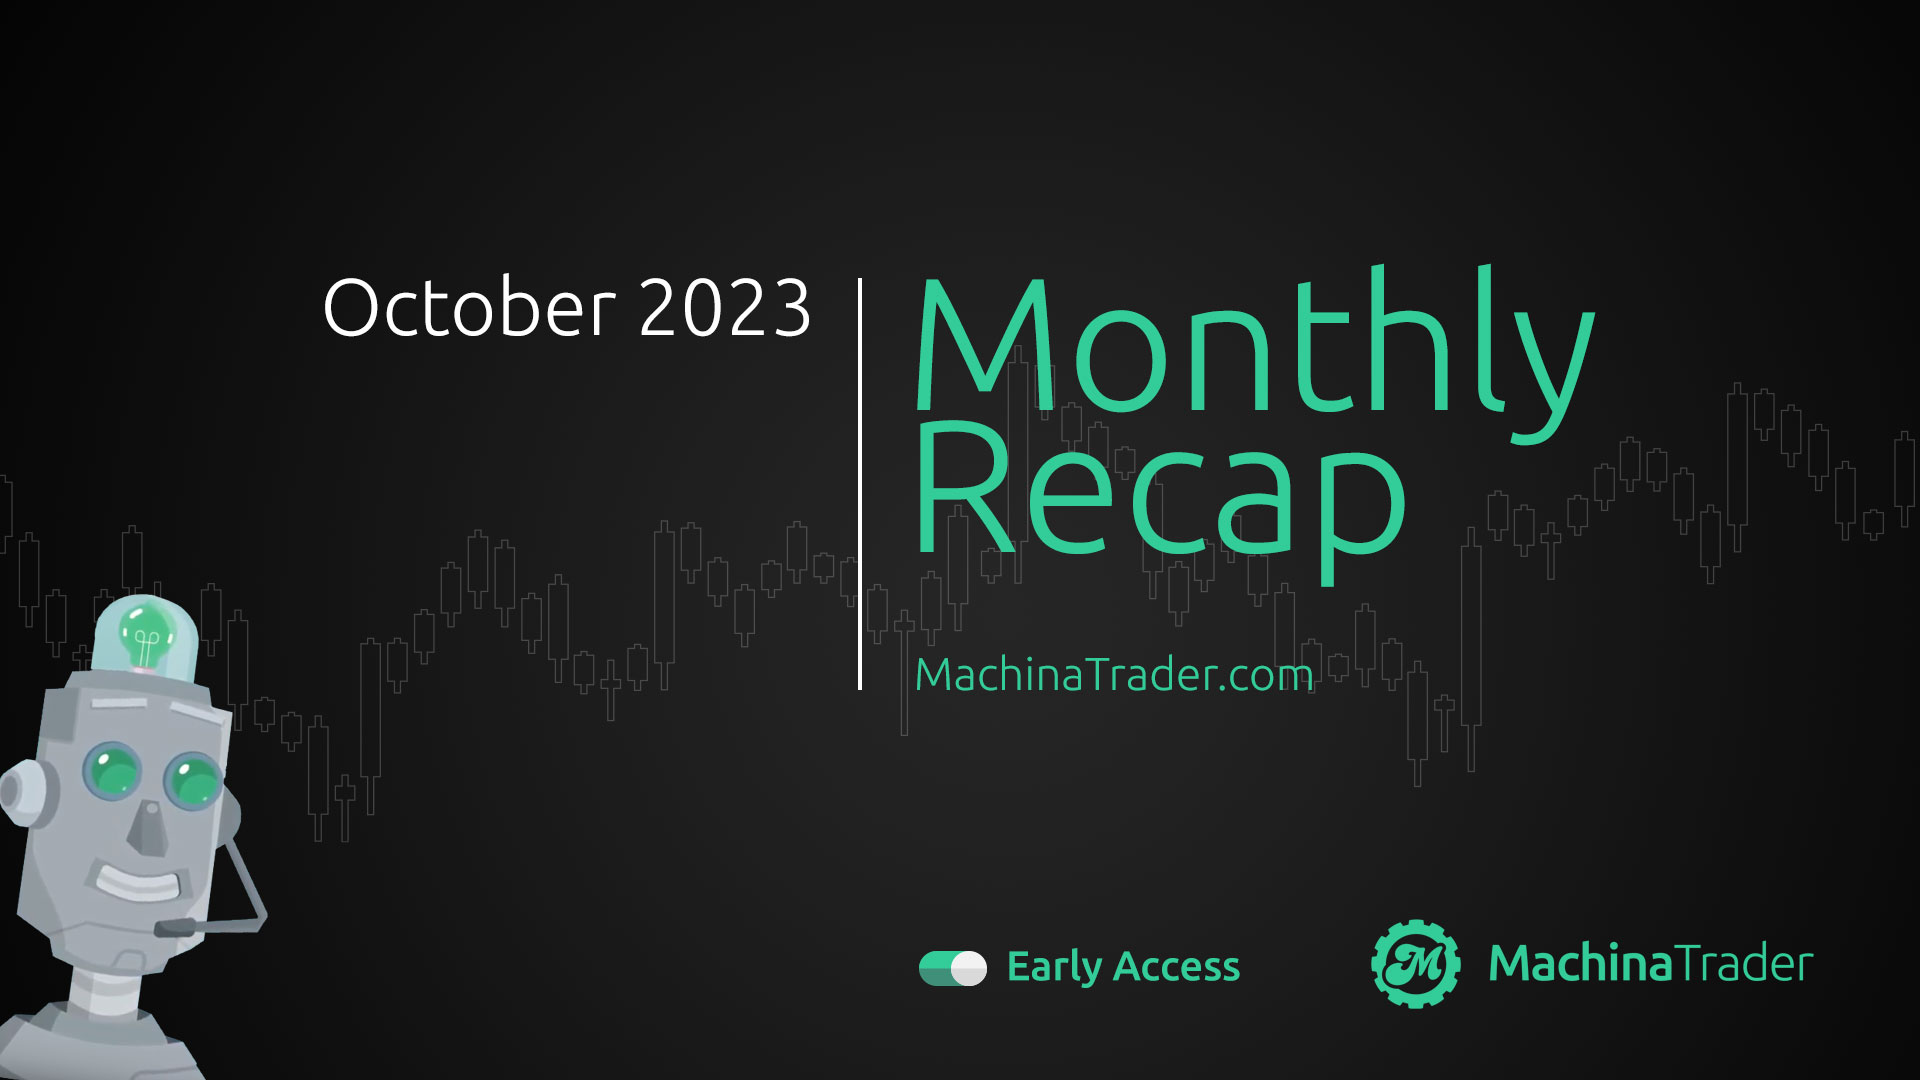 MachinaTrader Monthly Recap – October 2023